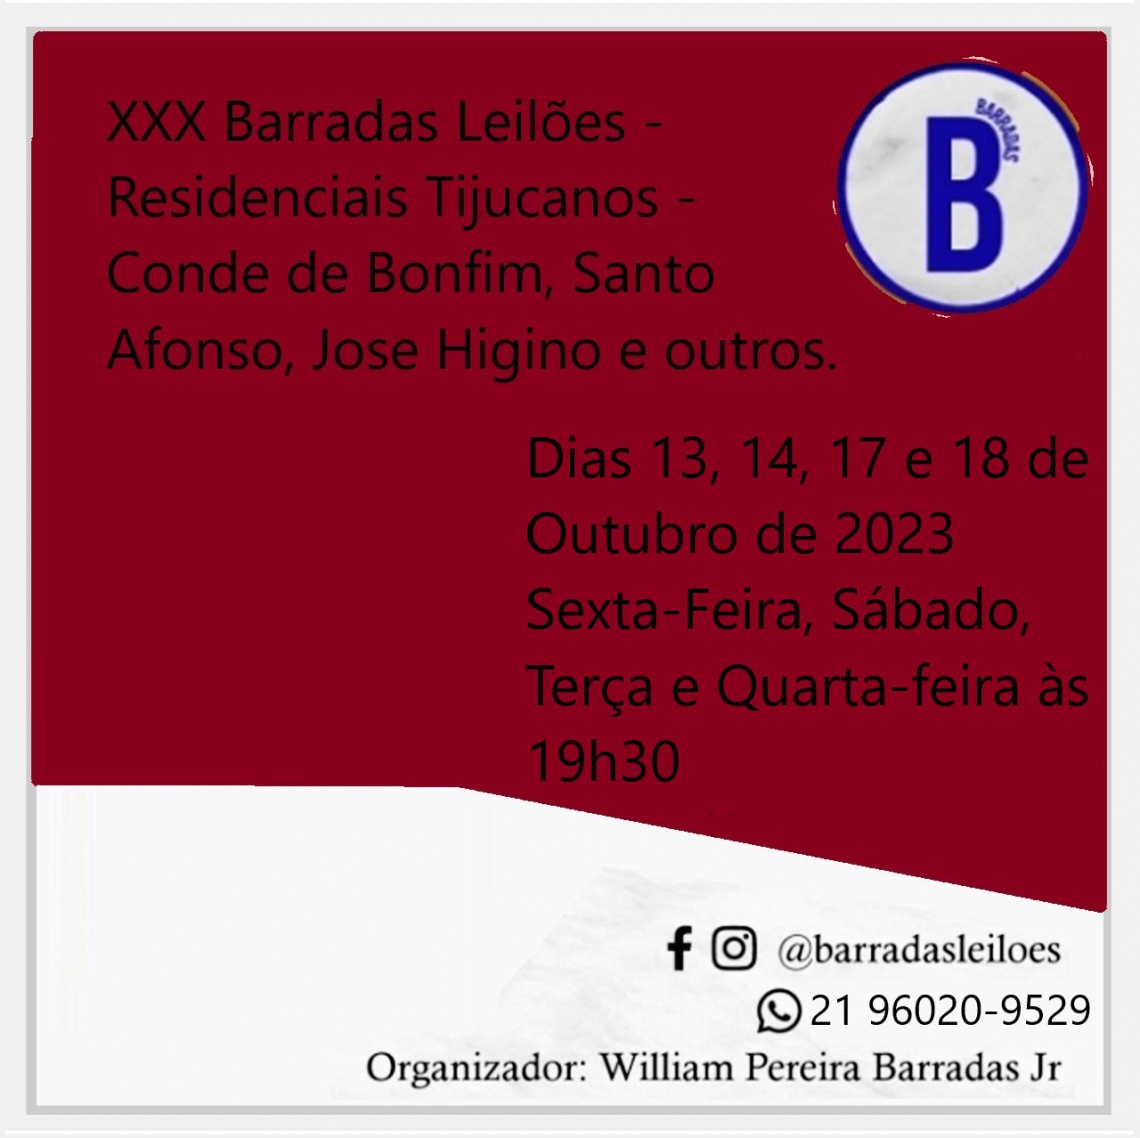 XXX Barradas Leilões - Residenciais Tijucanos - Conde de Bonfim, Santo Afonso, Jose Higino e outros.